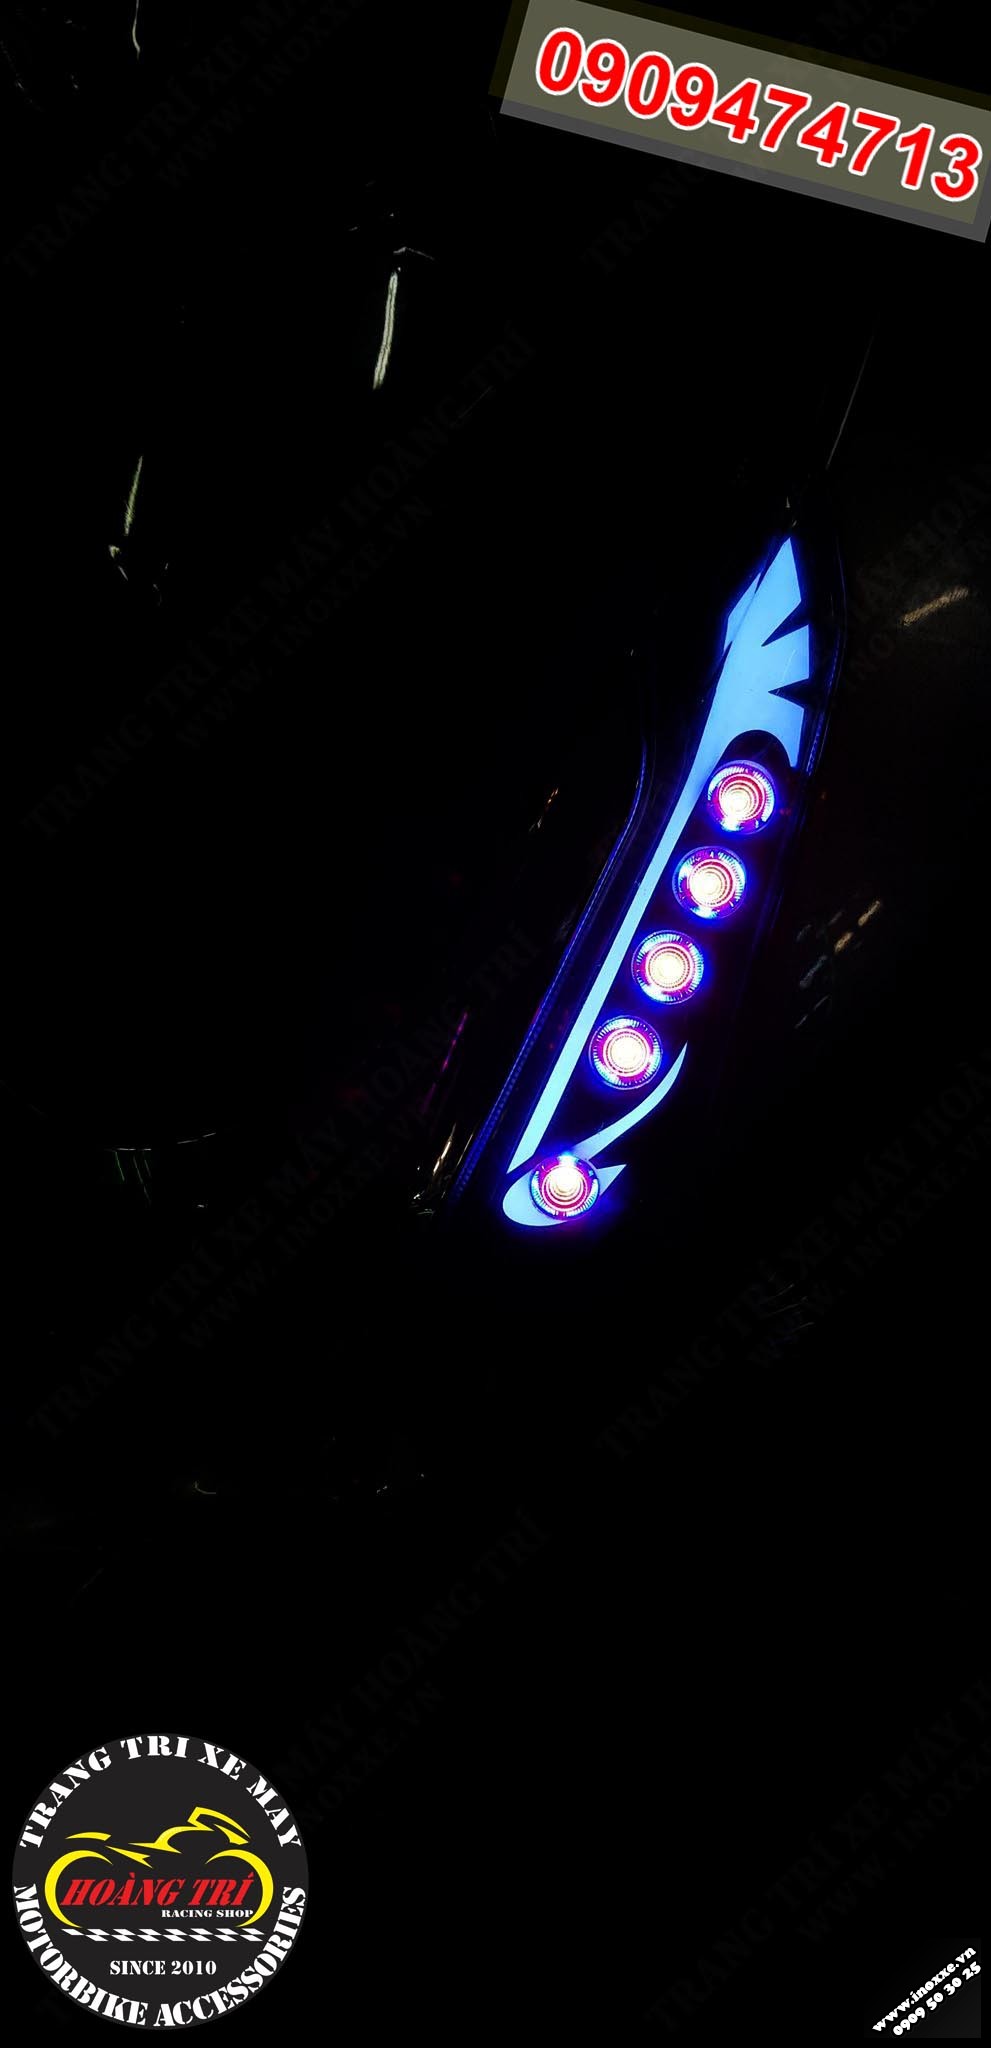 LED Audi Sh 2012 mẫu K1 rực rỡ trong đêm tối